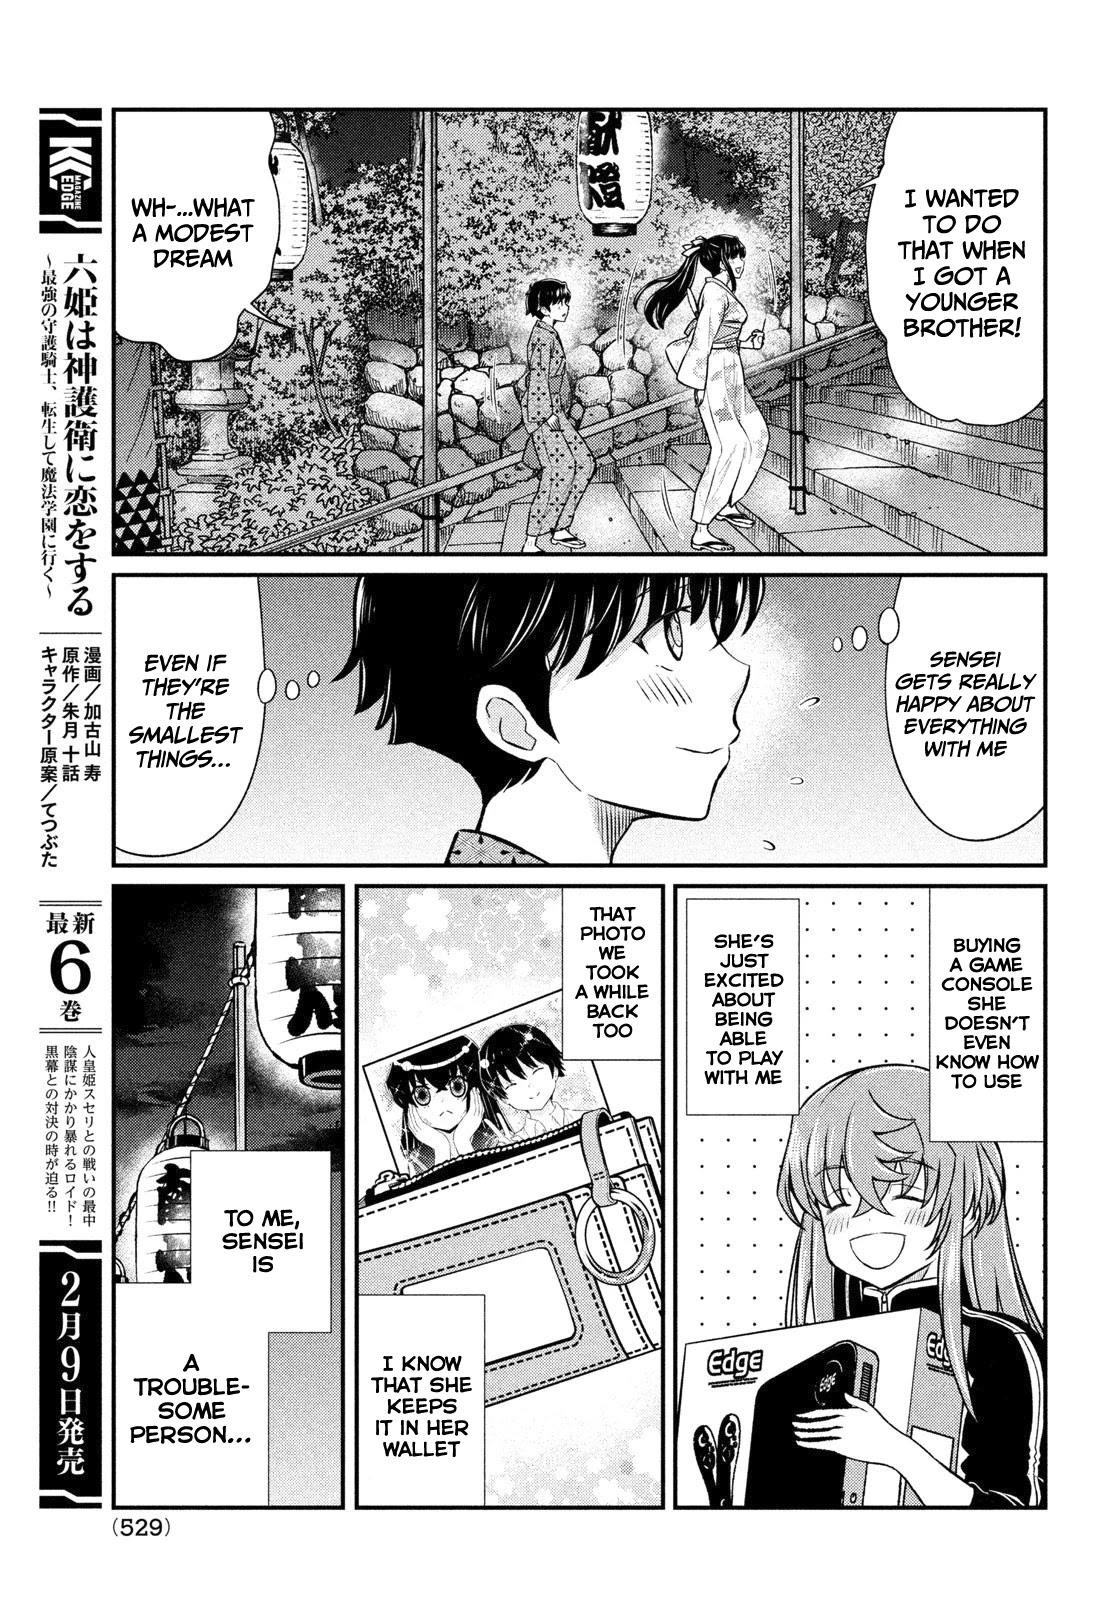 Read Boku No Kanojo Sensei 9 - Oni Scan